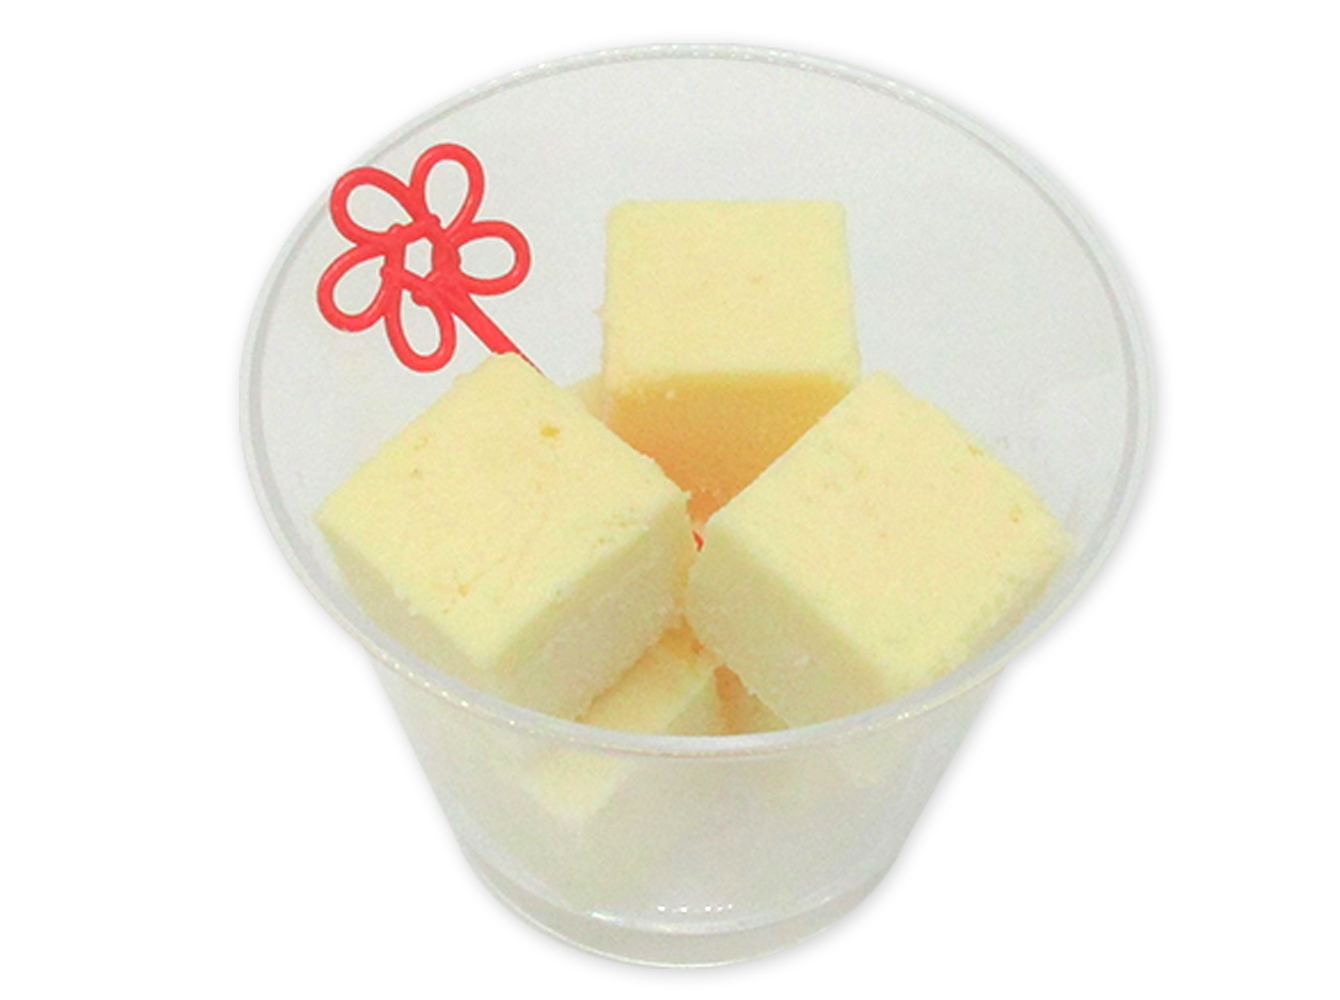 セブンから徳島の自然口いっぱいに。贅沢な徳島県産木頭ゆず果汁使用チーズケーキの香りと風味を満喫